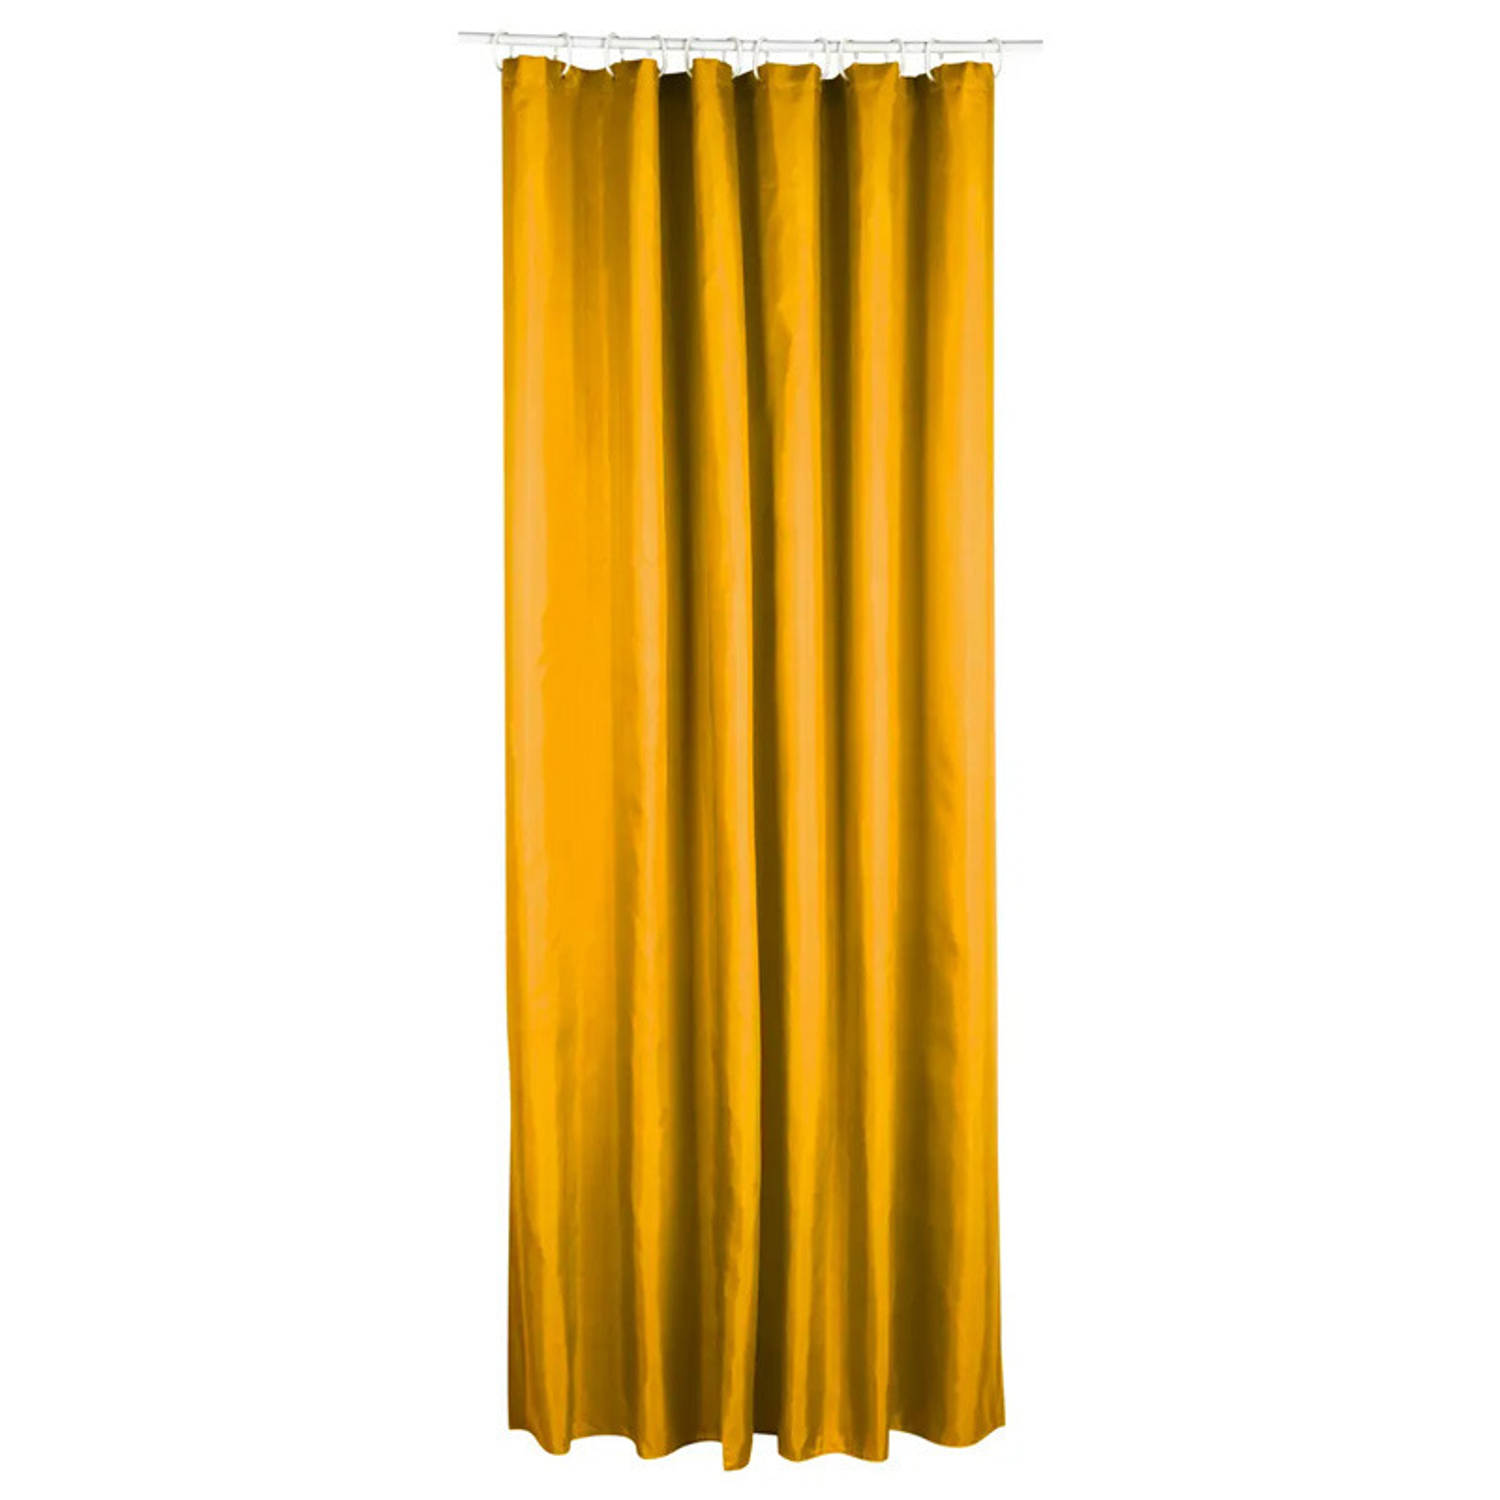 5Five Douchegordijn geel polyester 180 x 200 cm inclusief ringen Douchegordijnen